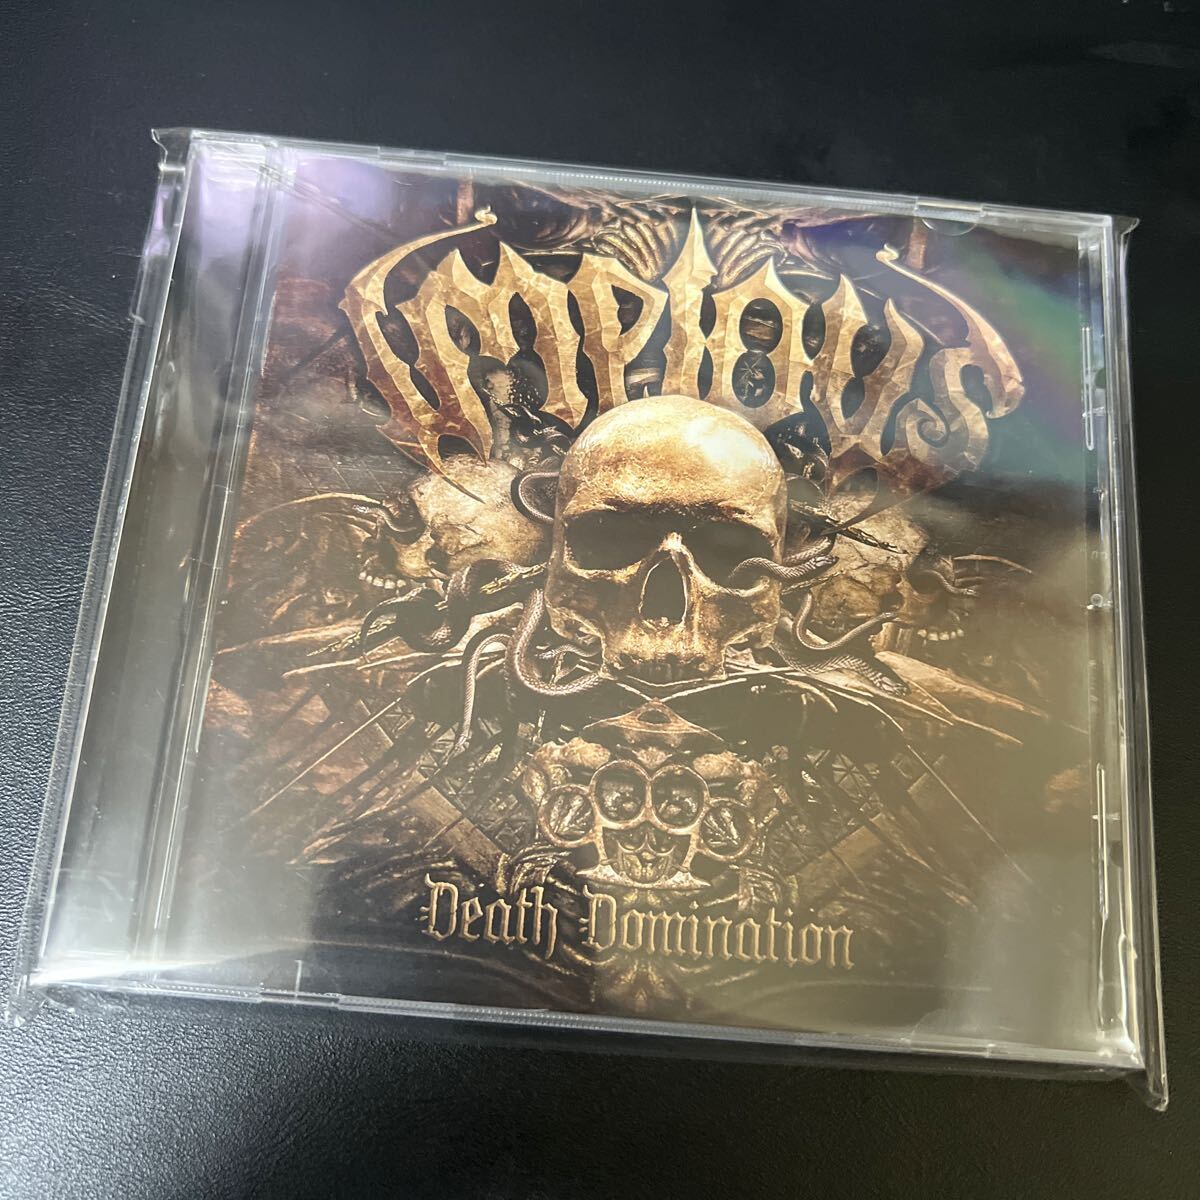 【新品同様】Impious / Death Domination【デスラッシュ】兀突骨,Revocation,HateSphere,Tortured Demon,Megadeth,Slayer,Construcdead,